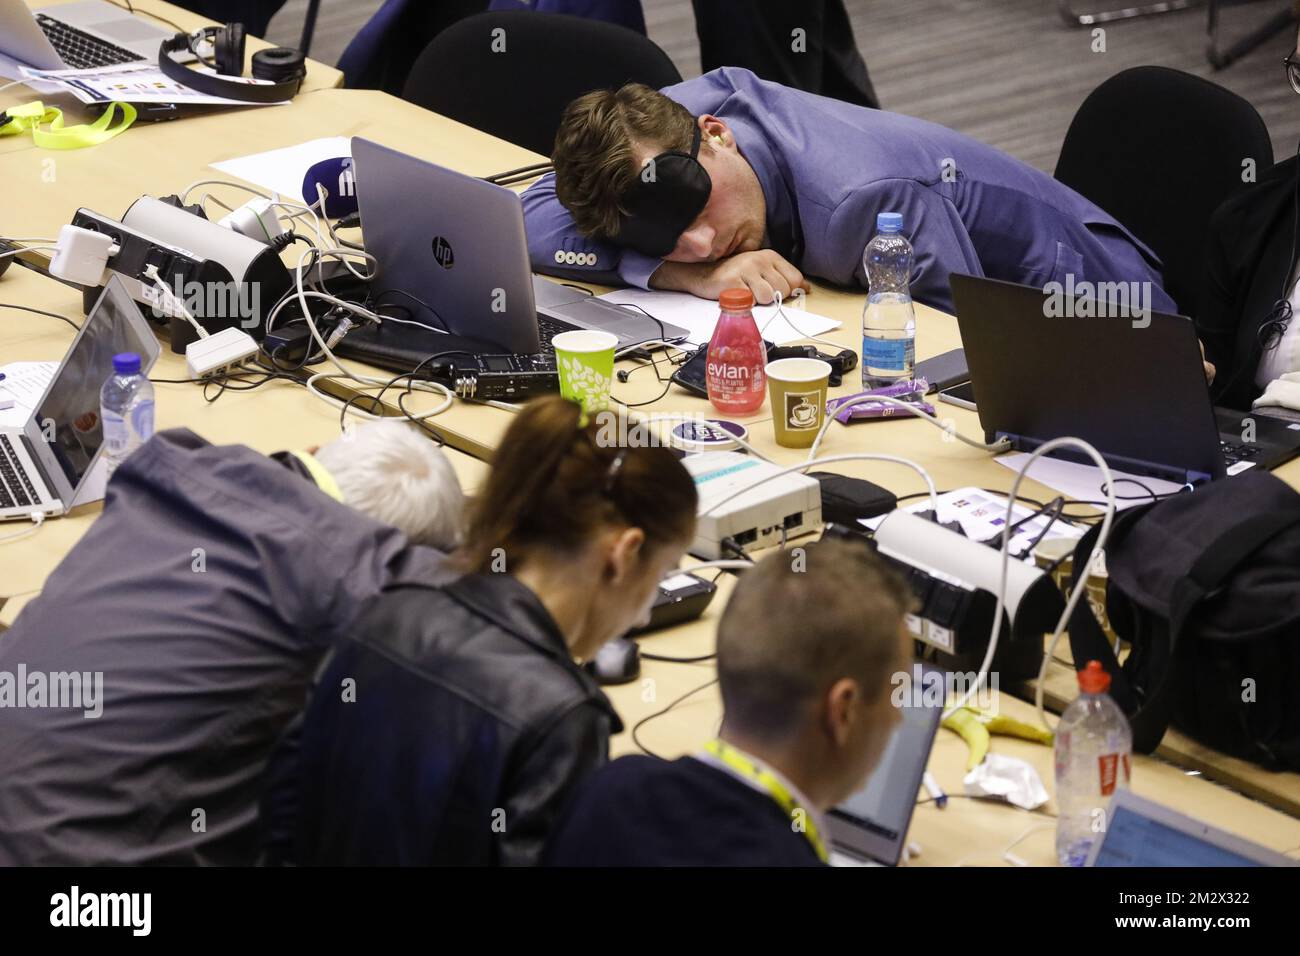 L'illustration montre des journalistes dormant pendant une nuit de négociation lors de la réunion au sommet de l'UE, le lundi 01 juillet 2019, au siège de l'Union européenne à Bruxelles. BELGA PHOTO THIERRY ROGE Banque D'Images